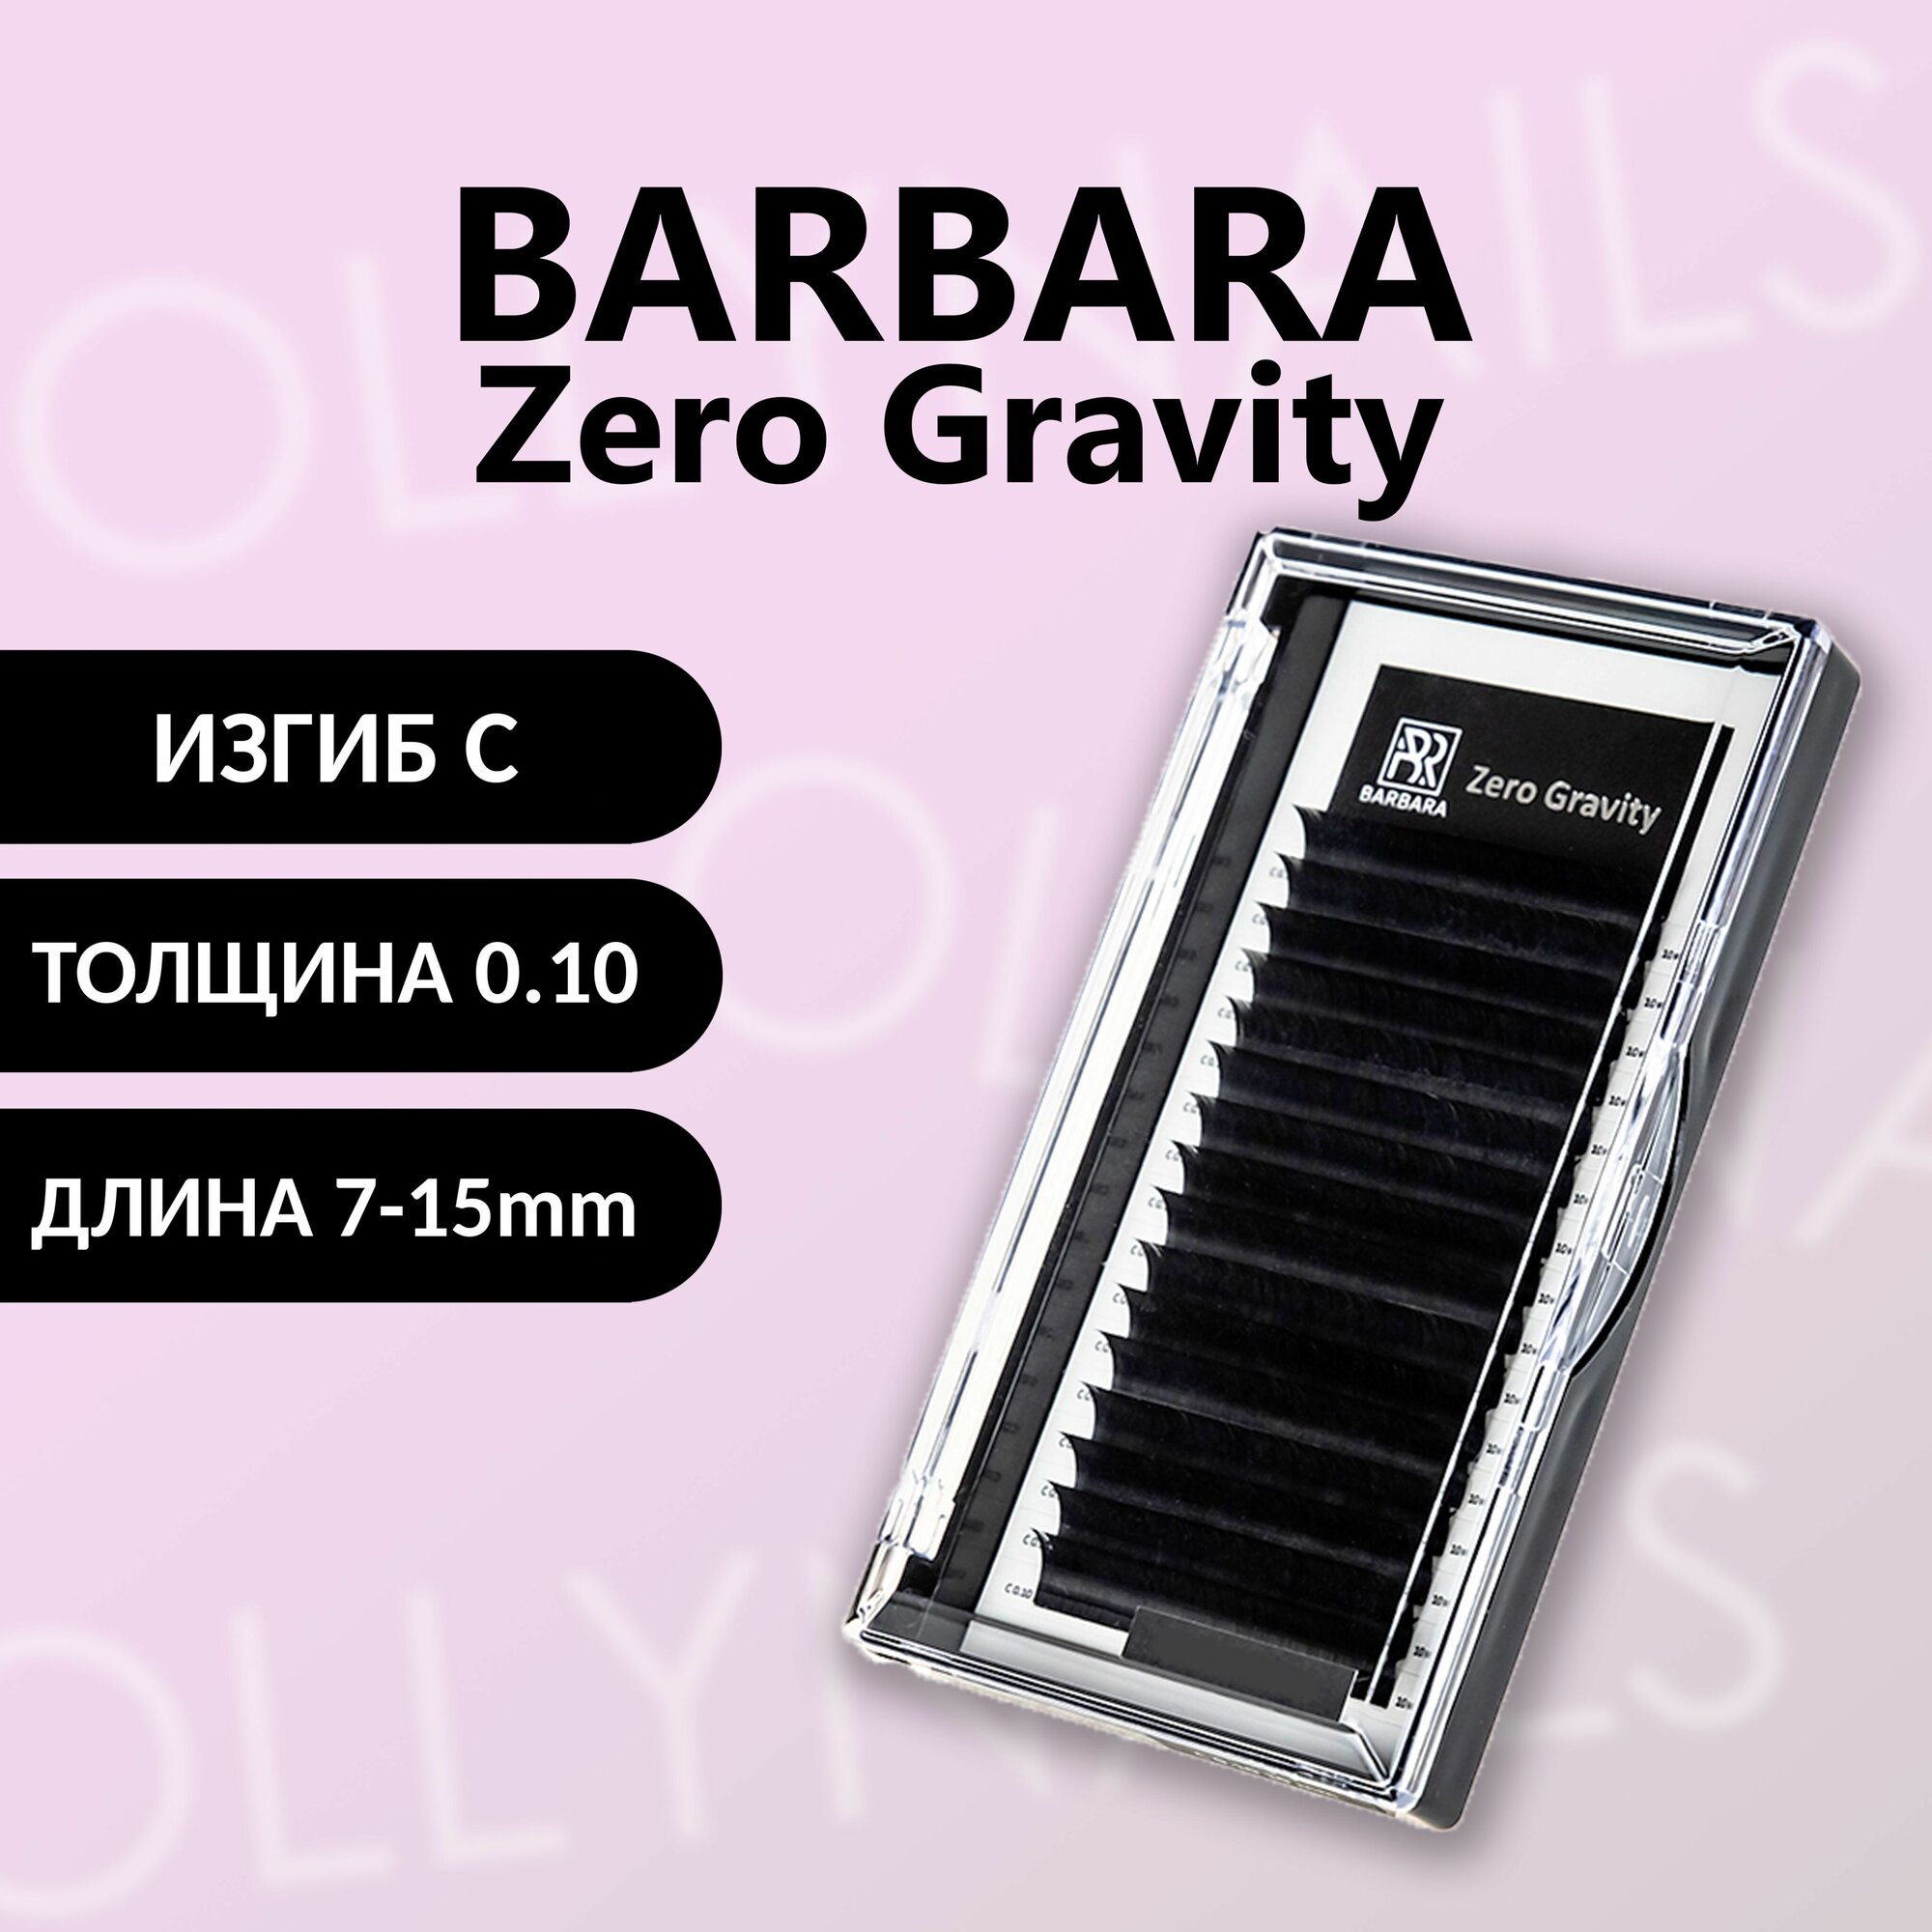 Черные ресницы BARBARA Zero Gravity C 0.10 7-15 mm